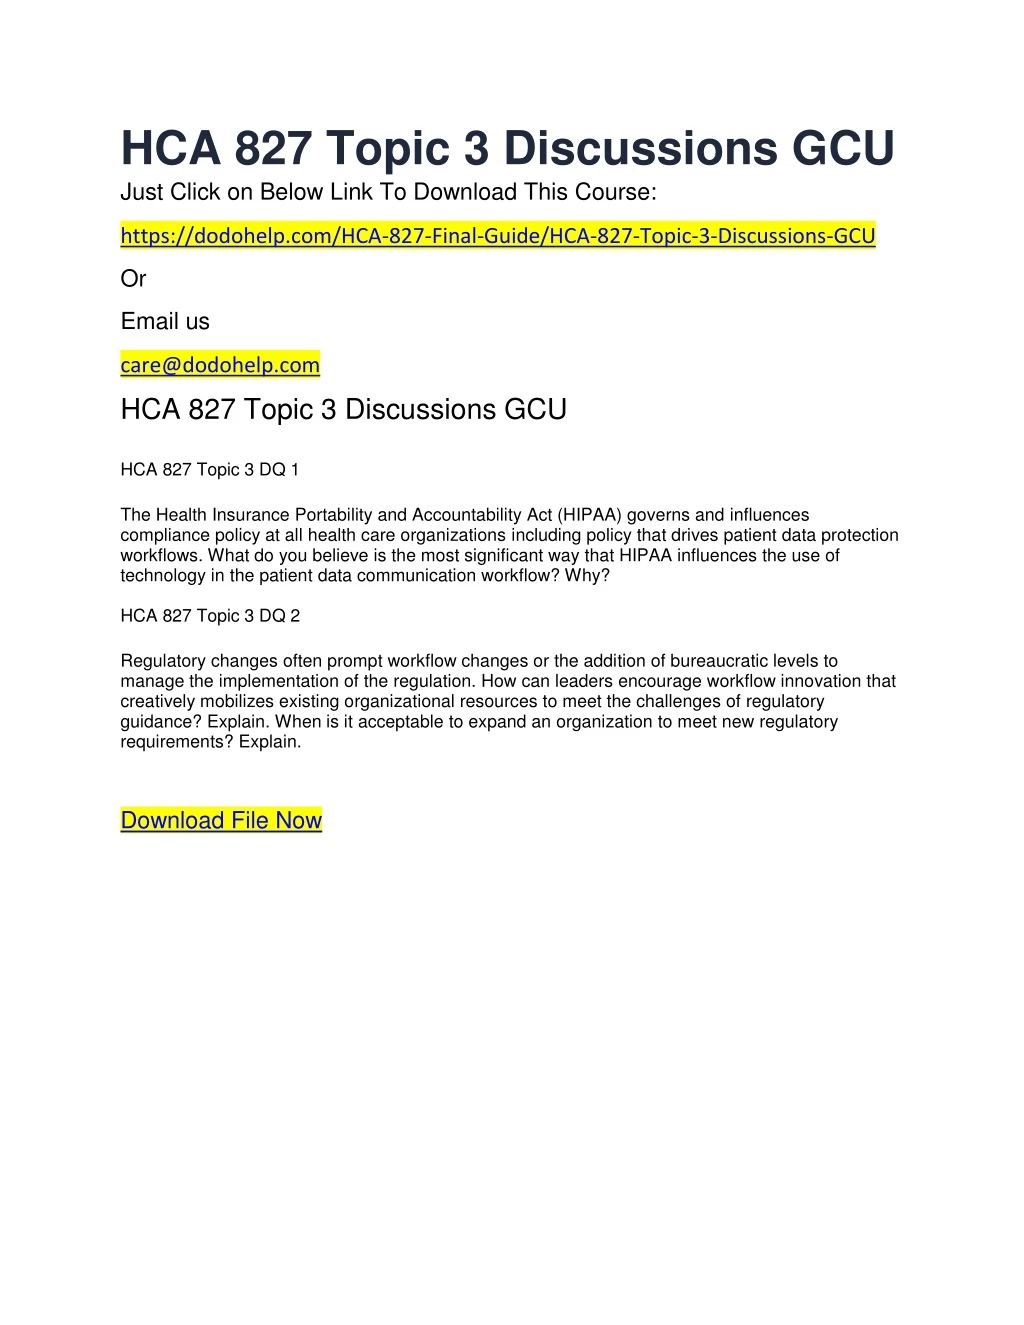 hca 827 topic 3 discussions gcu just click